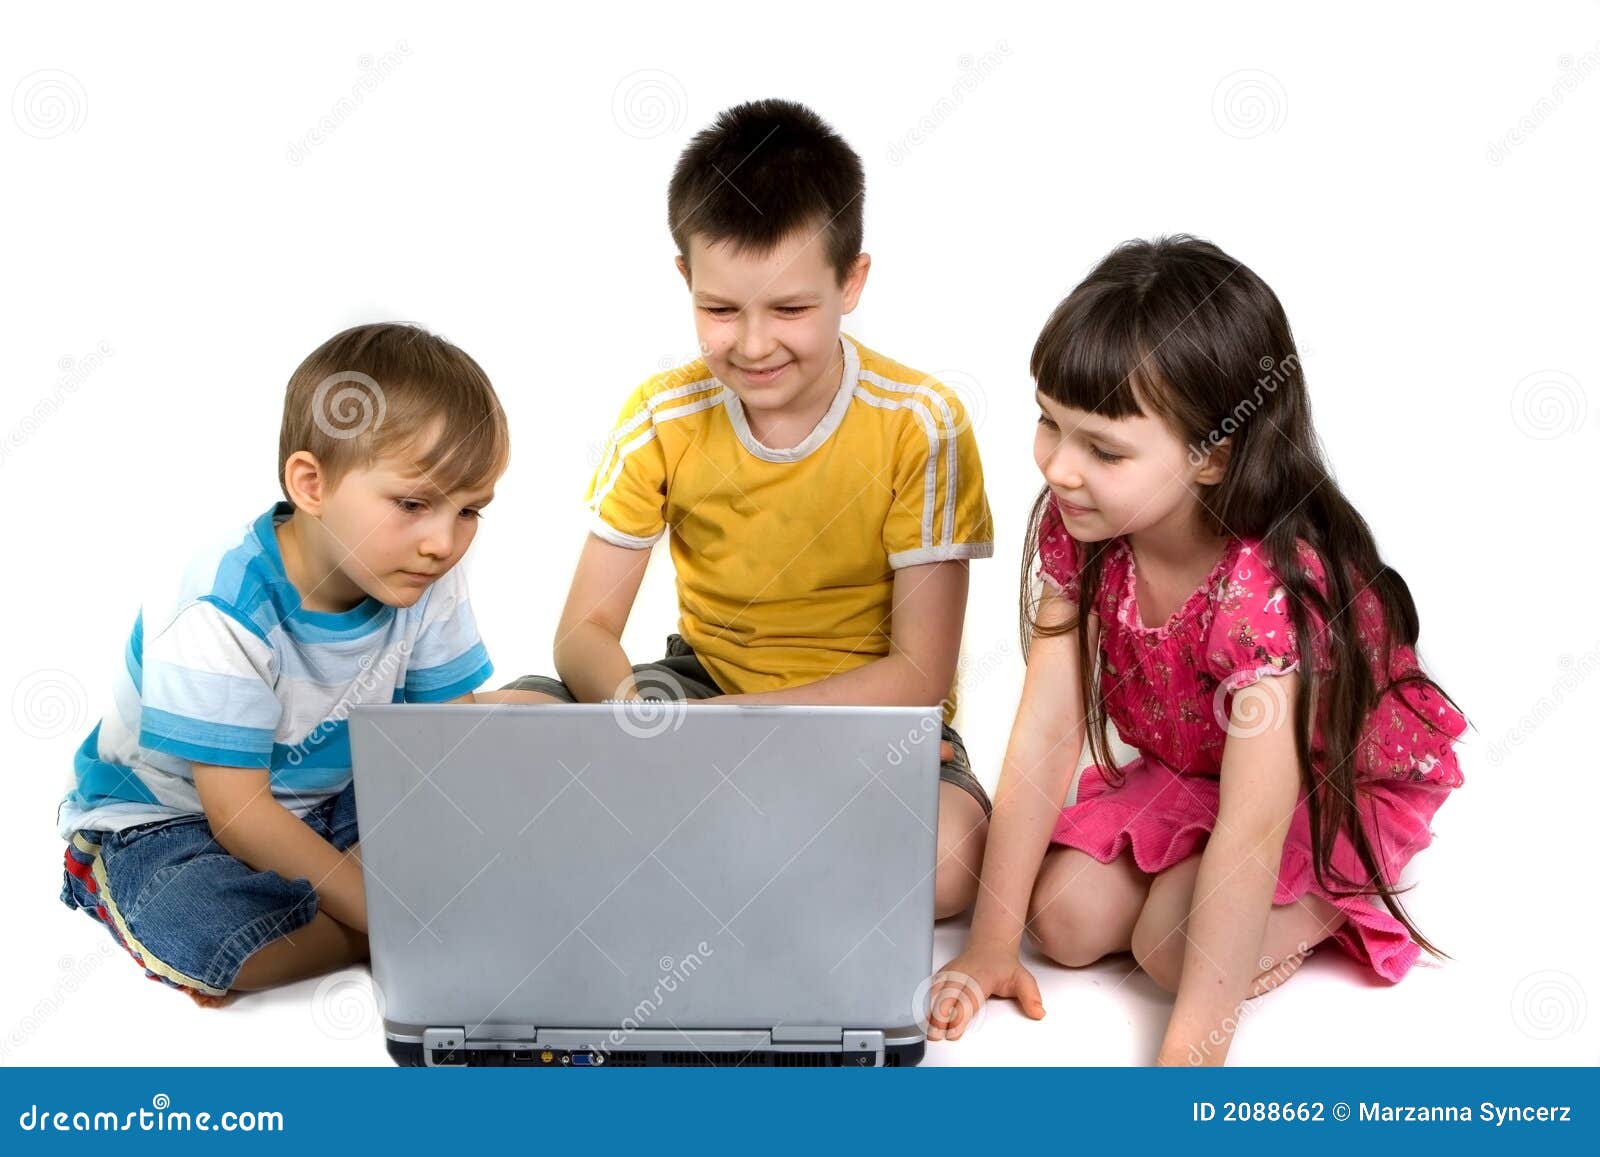 Phương thức học tiếng Anh dành cho thiếu nhi mới Kids-playing-laptop-computer-2088662